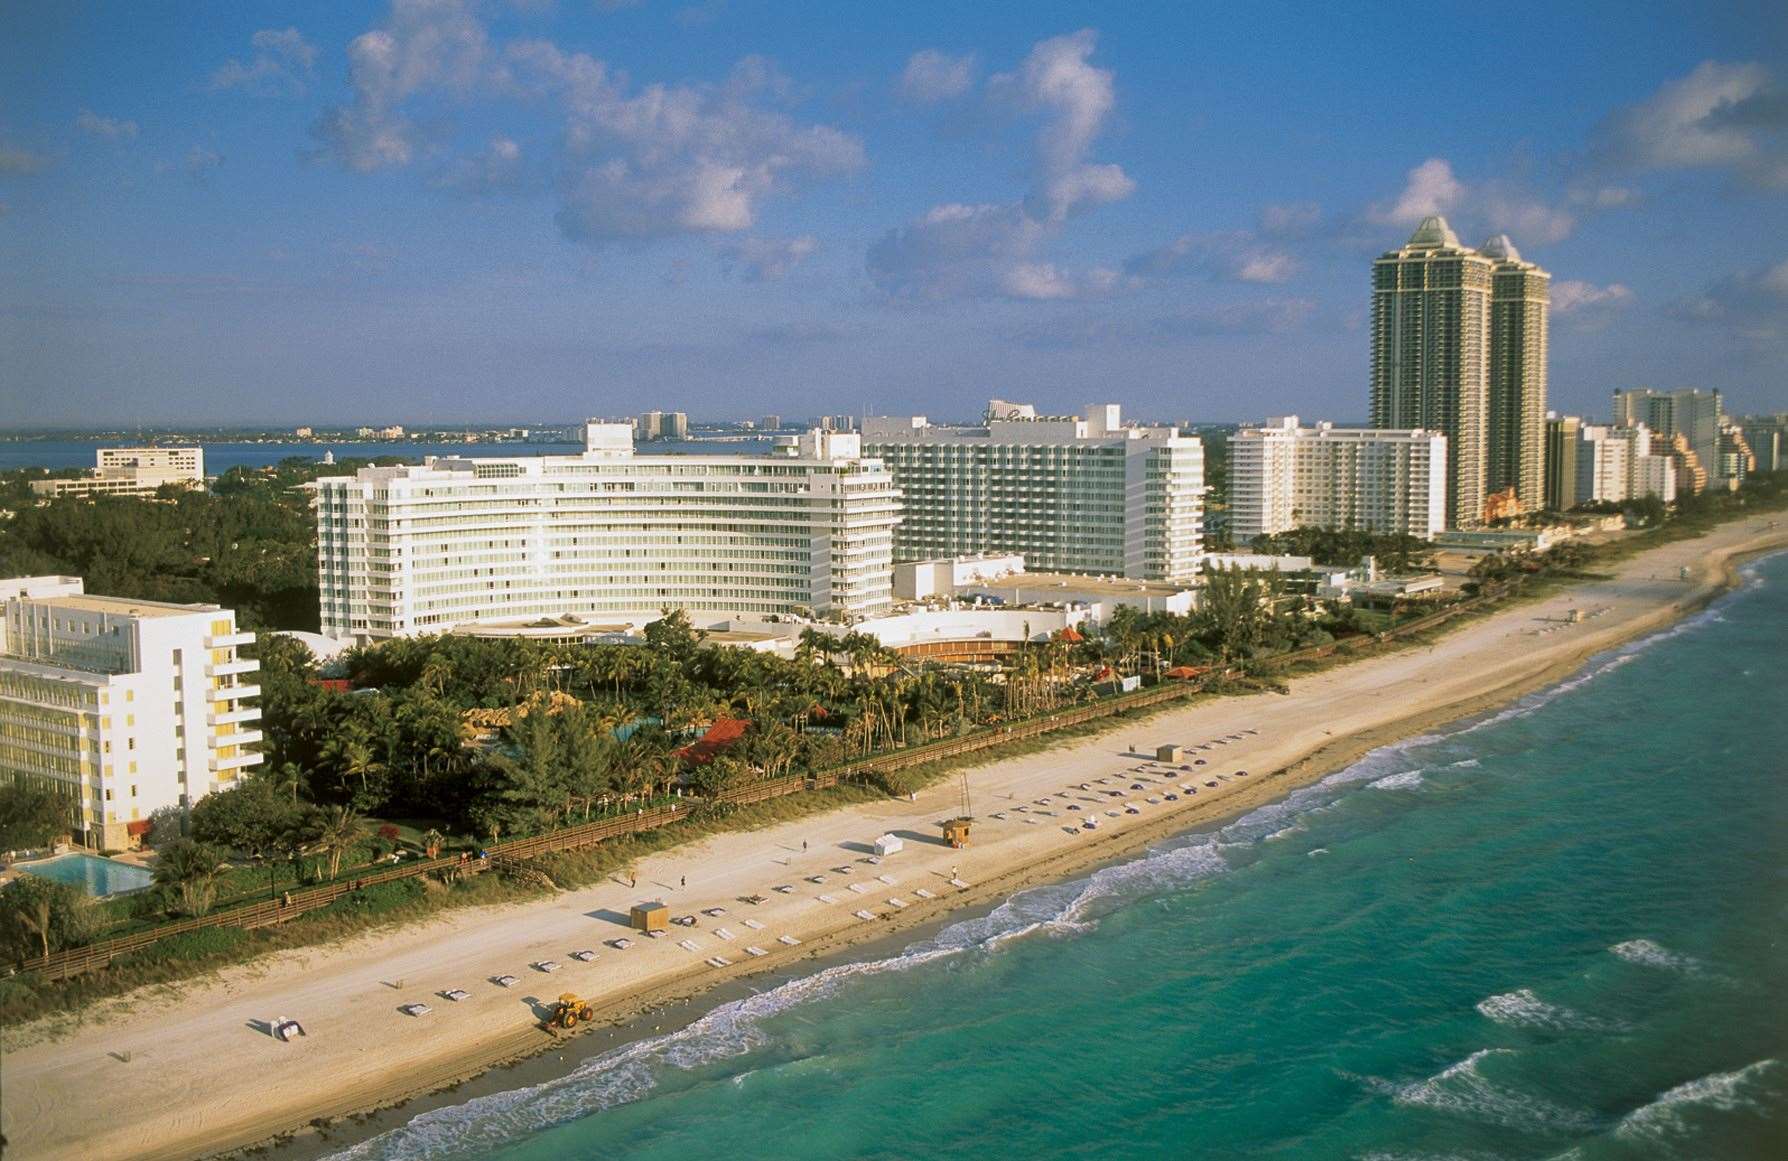 The Eden Roc Miami Beach Hotel overlooking Miami Beach. Picture: Greater Miami Convention & Visitors Bureau